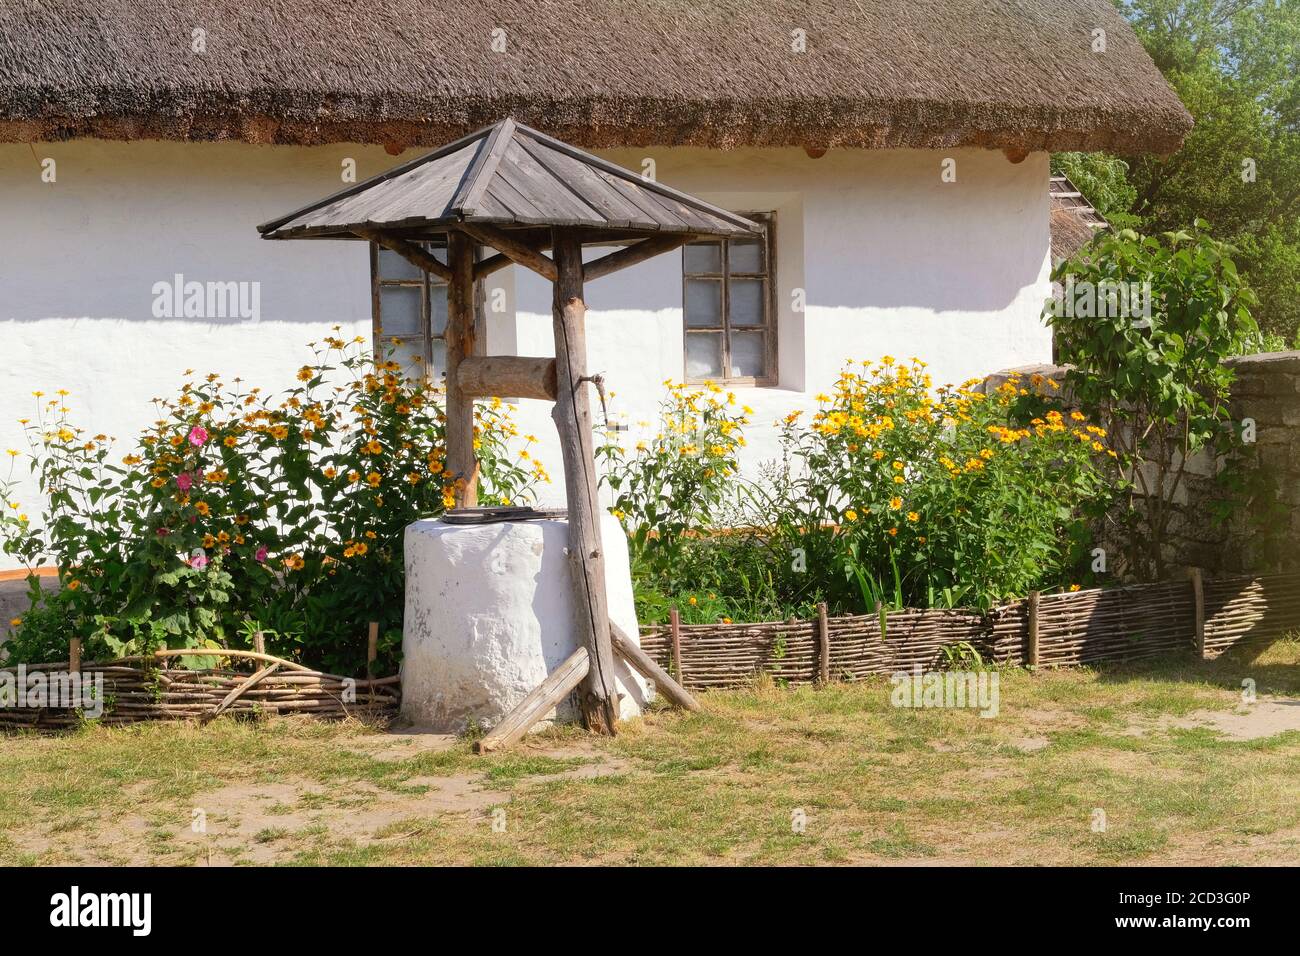 Alter Brunnen in der Nähe einer ländlichen Hütte mit weiß getünchten Wänden. Dorf bewahrt rustikale Traditionen und Kultur. Stockfoto